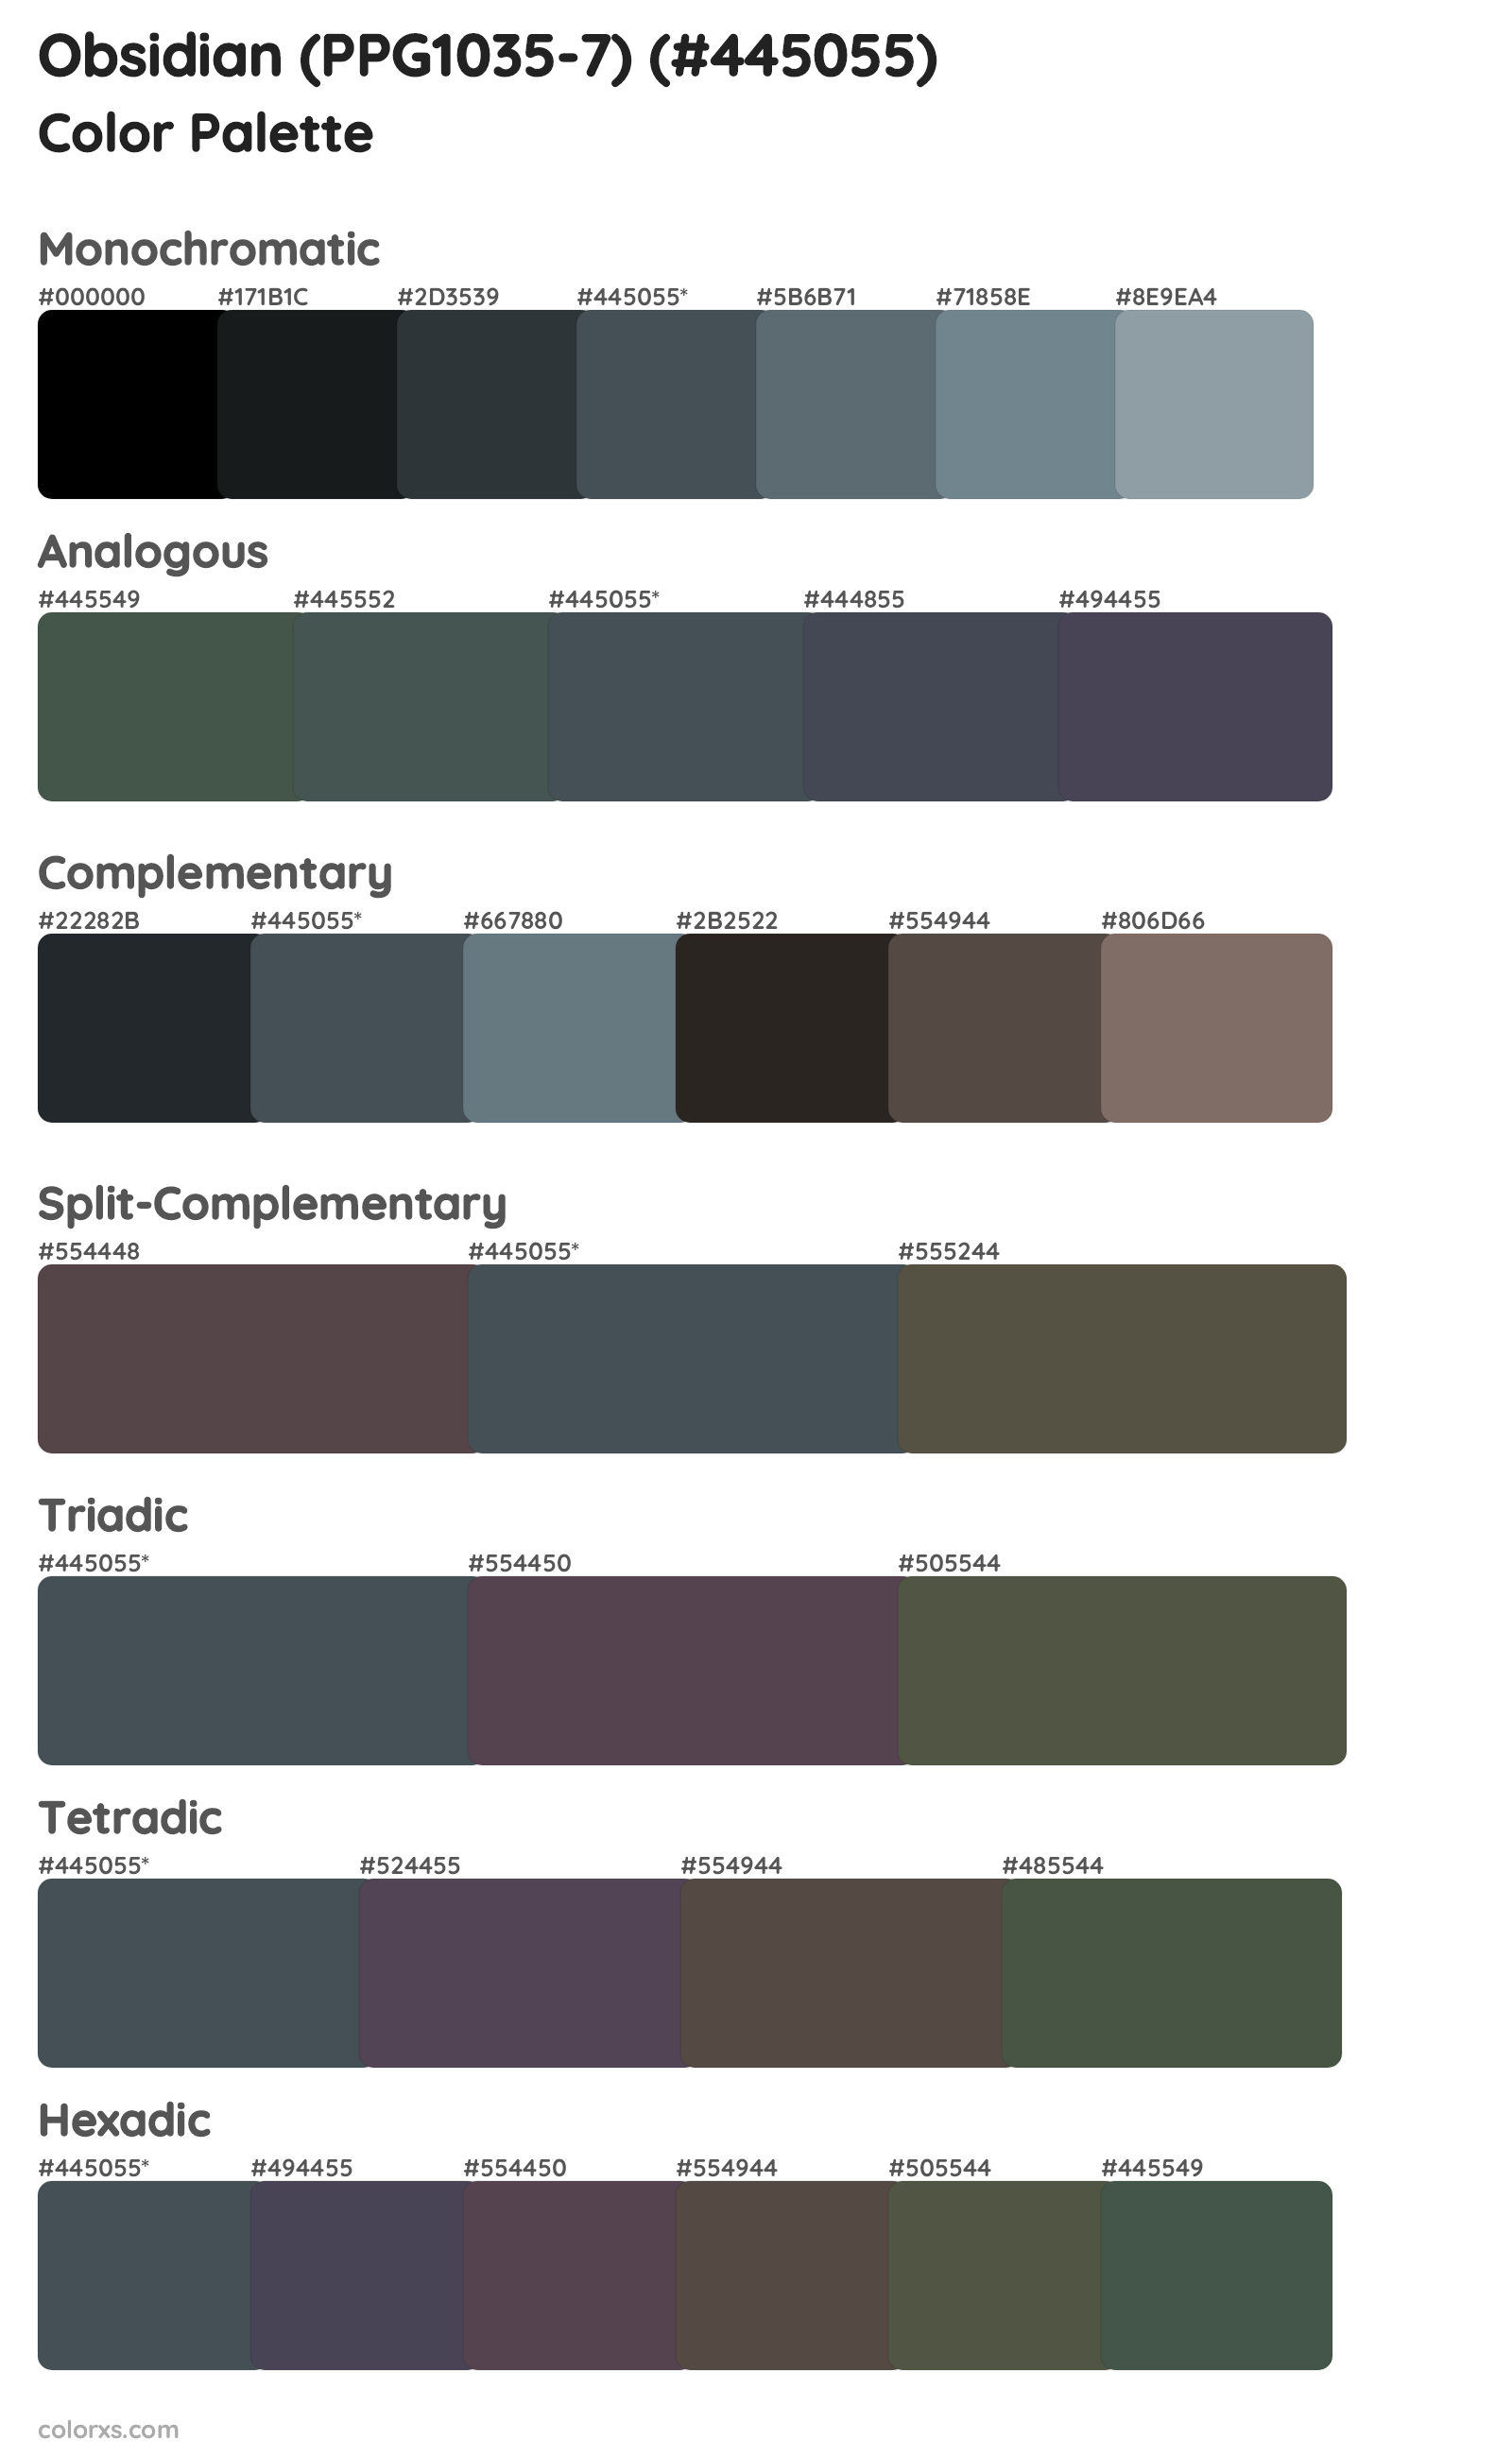 Obsidian (PPG1035-7) Color Scheme Palettes